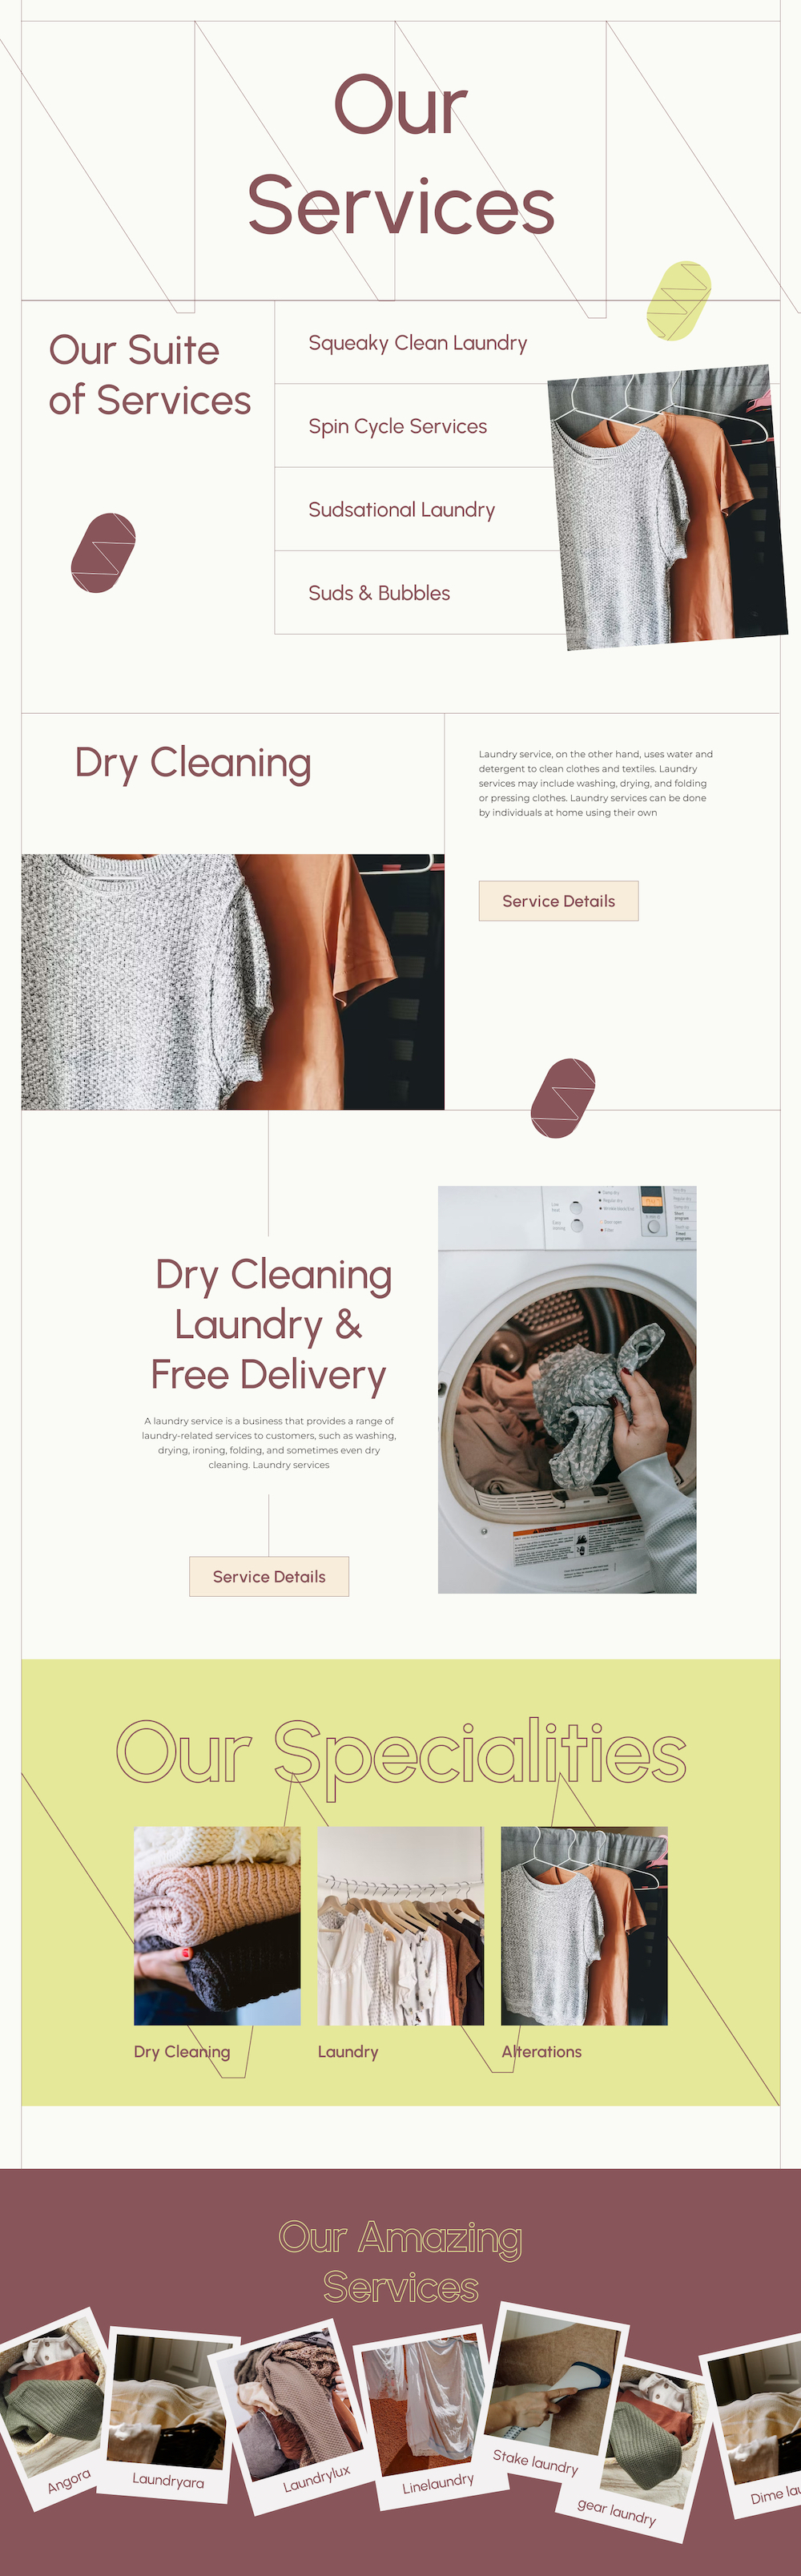 Laundromat Services Page